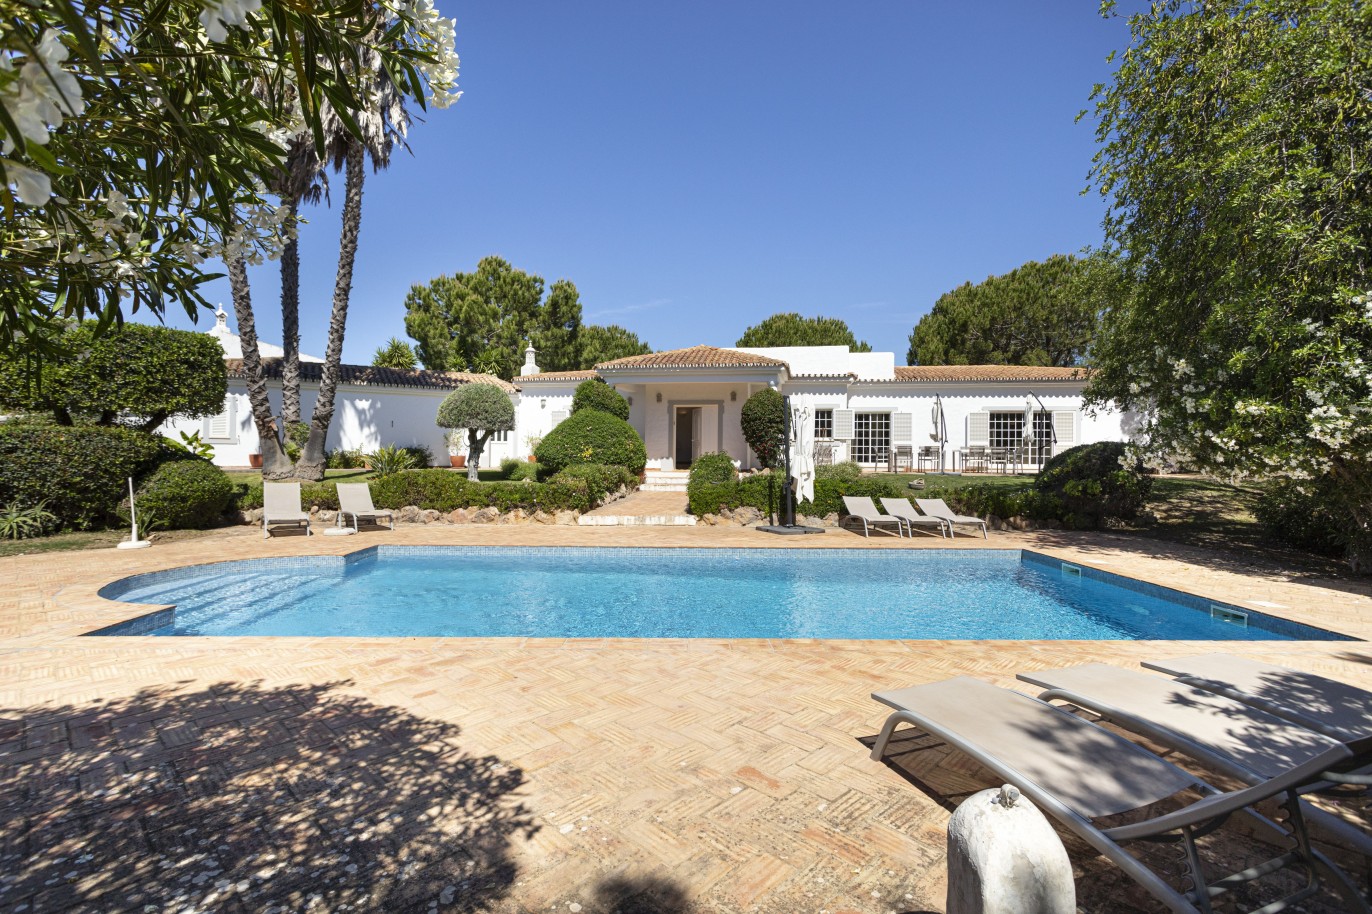 Moradia V6 com jardim e piscina, para venda em Boliqueime, Algarve_225973